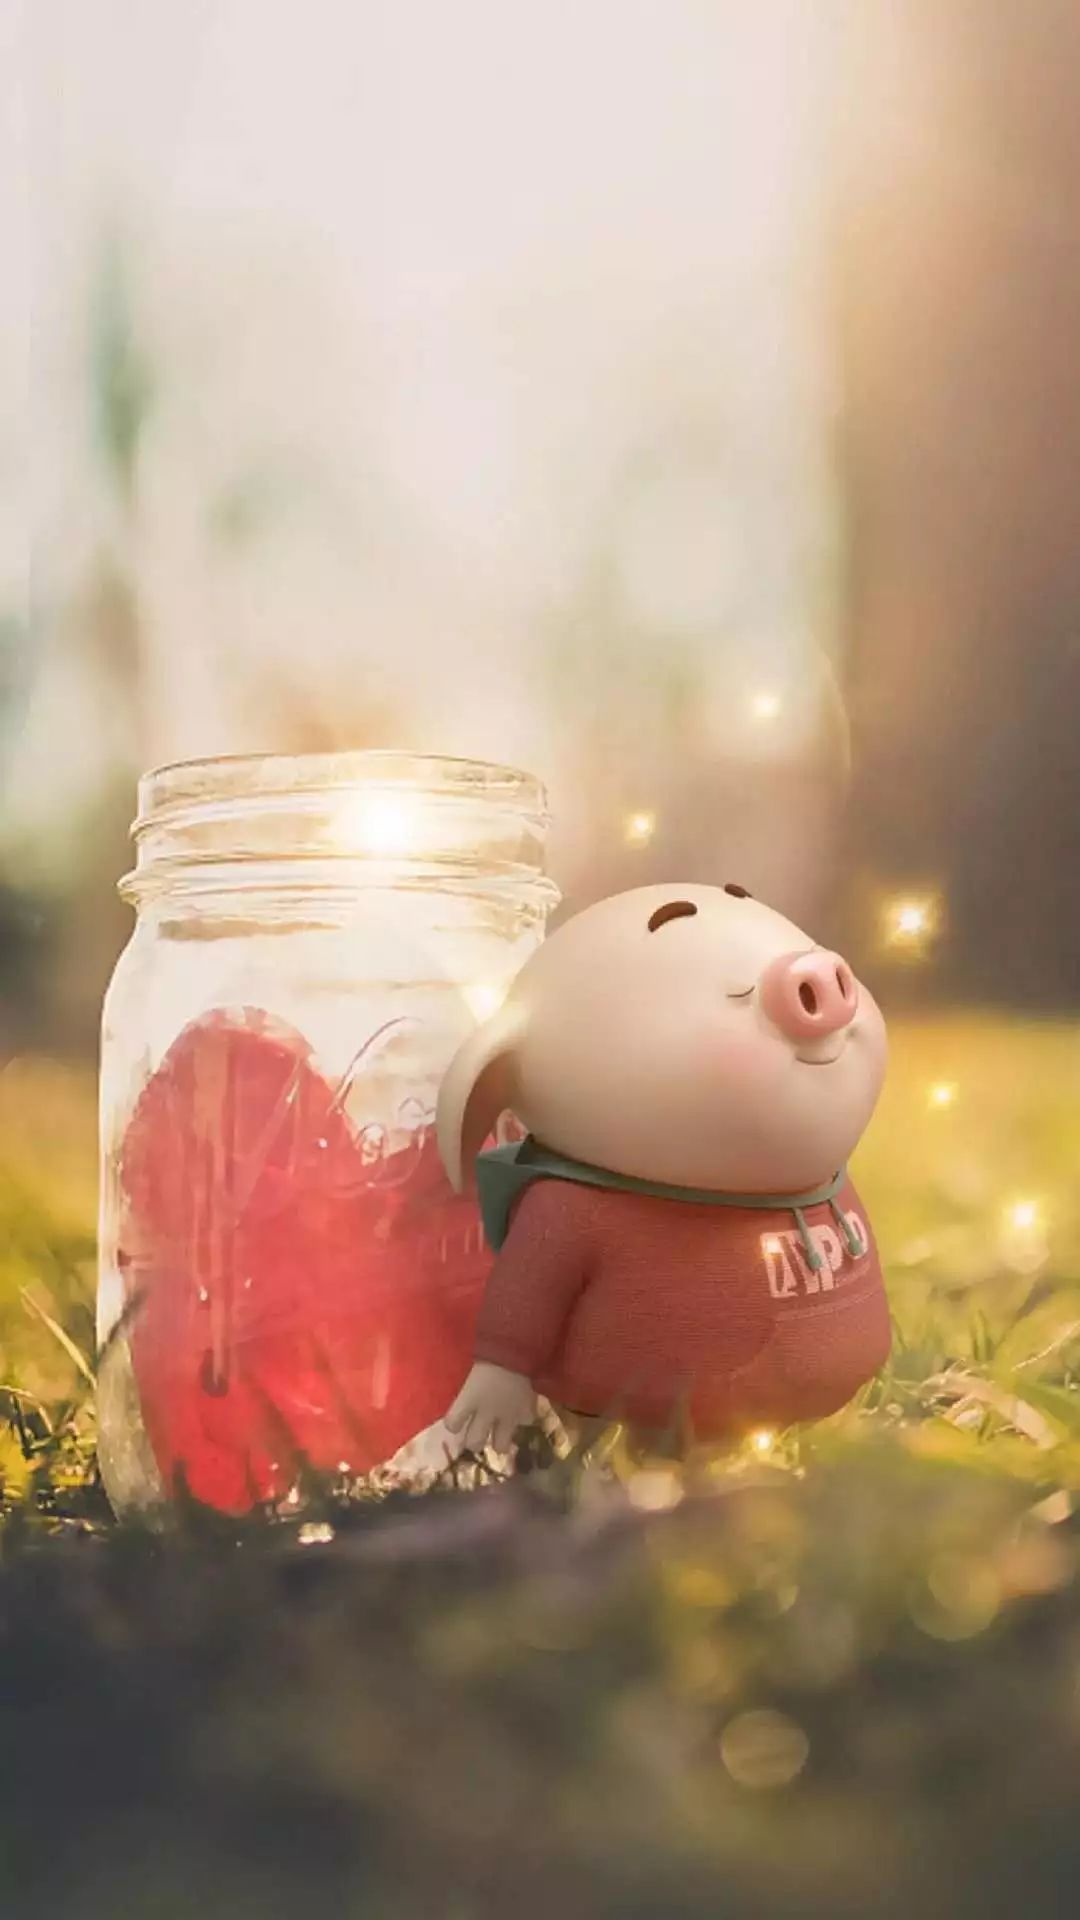 hinh-nen-chu-lon-ngo-nghinh-cho-iphone-20 | Pig wallpaper, Cute pigs, Cute  piglets